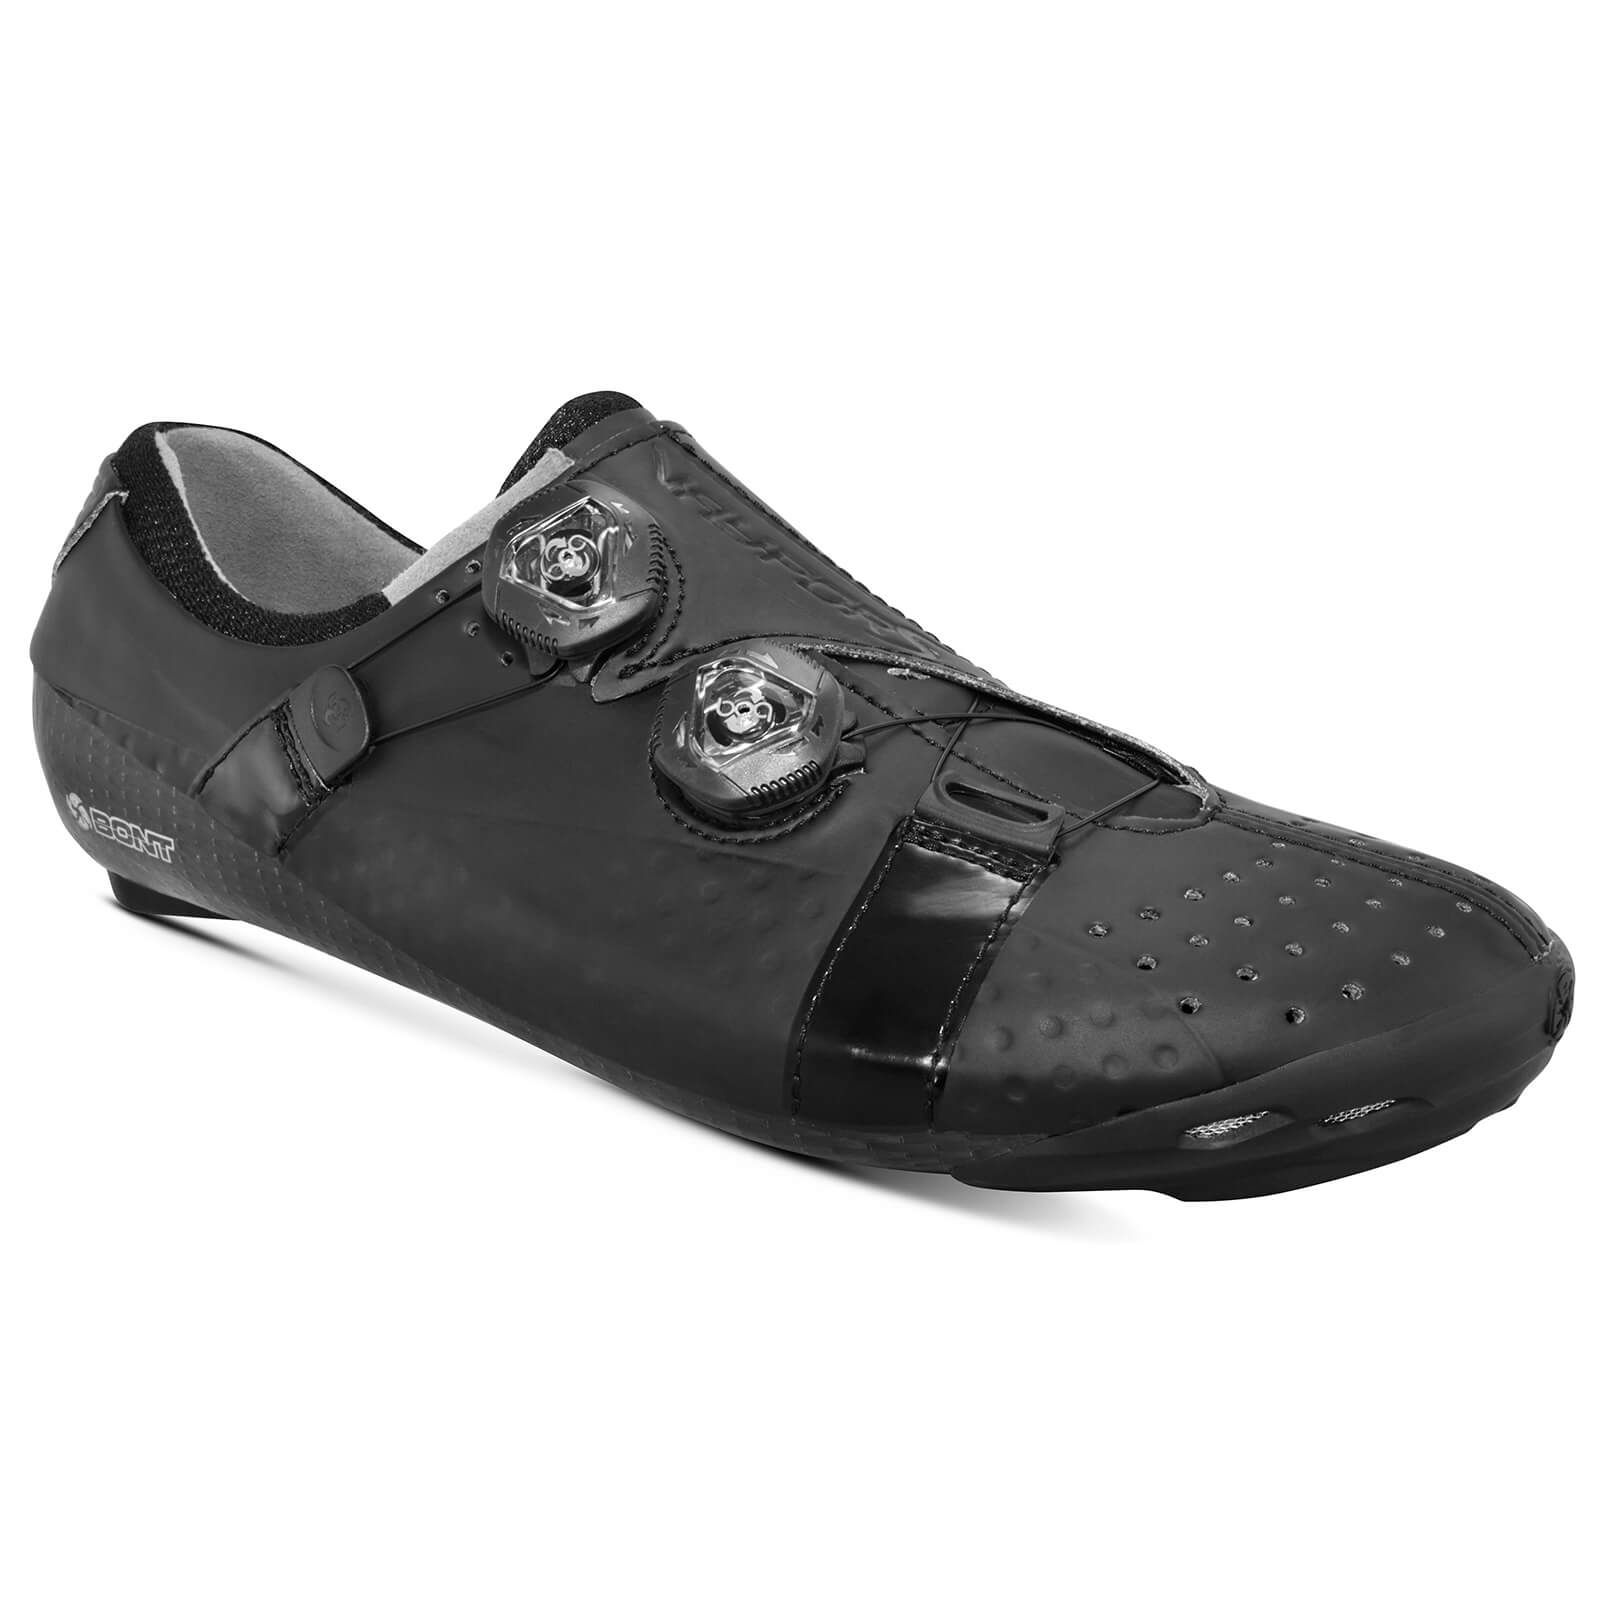 Bont Vaypor S Road Shoes - EU 40 - Standard Fit - Black